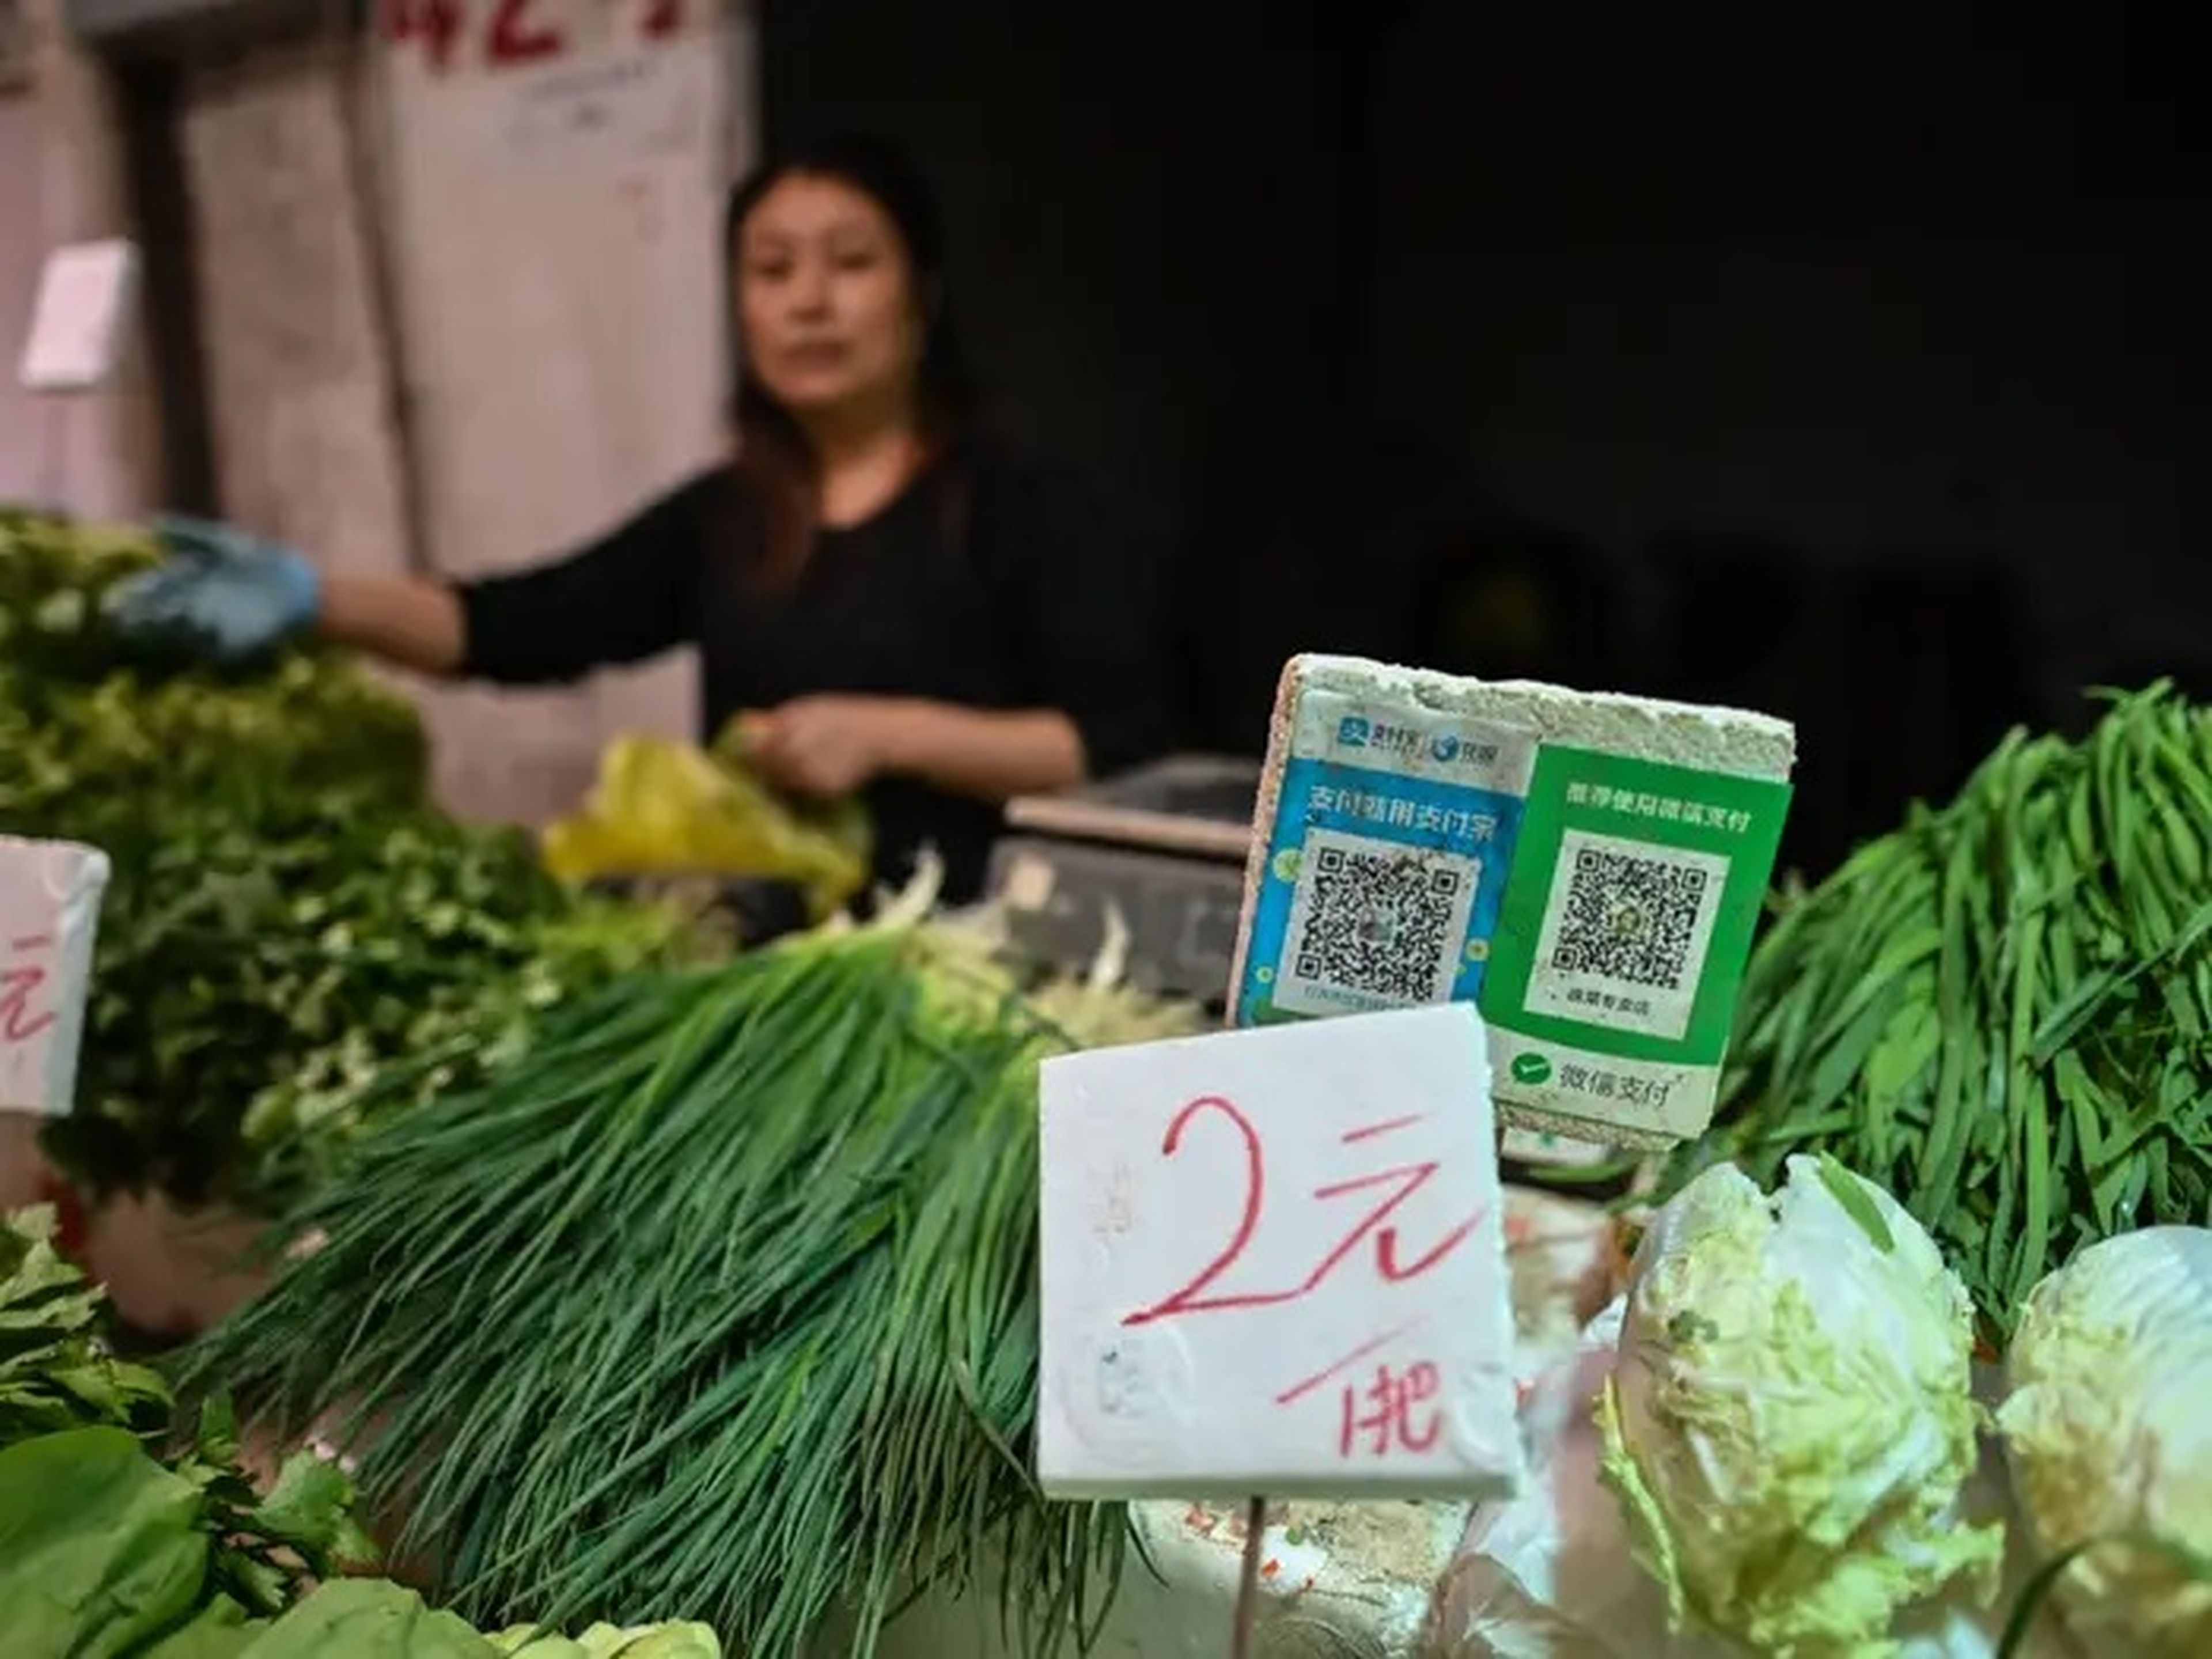 Ni siquiera puedes comprar verduras por 0,30 dólares sin WeChat Pay.